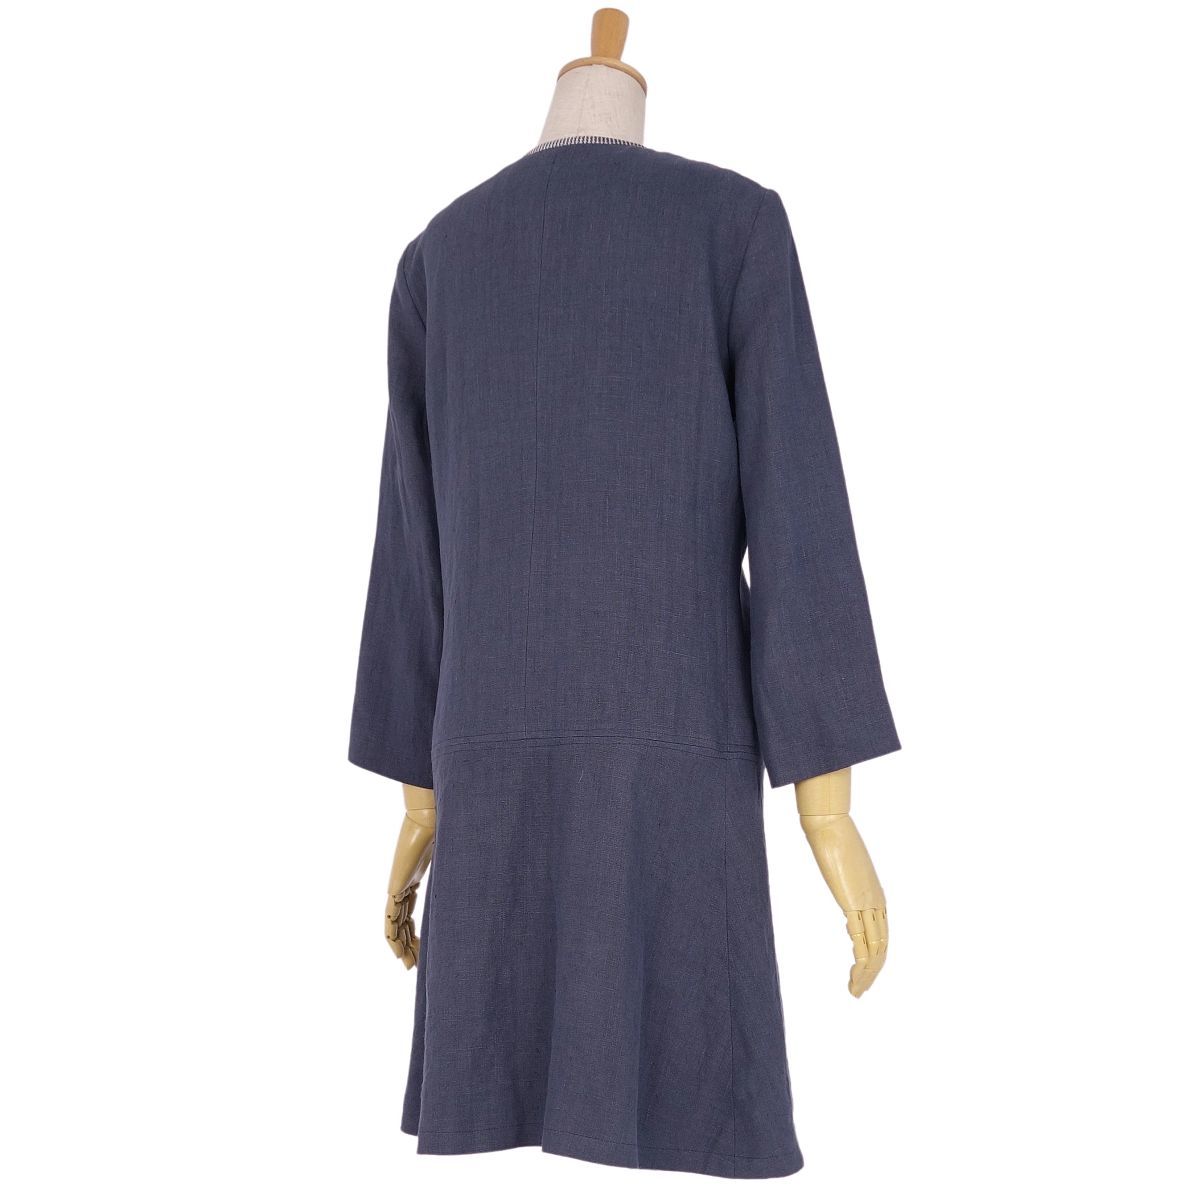  прекрасный товар Etro ETRO пальто linen шелк no color стразы подкладка общий рисунок женский внешний 40(M соответствует ) темно-синий cg02dd-rm11c13744